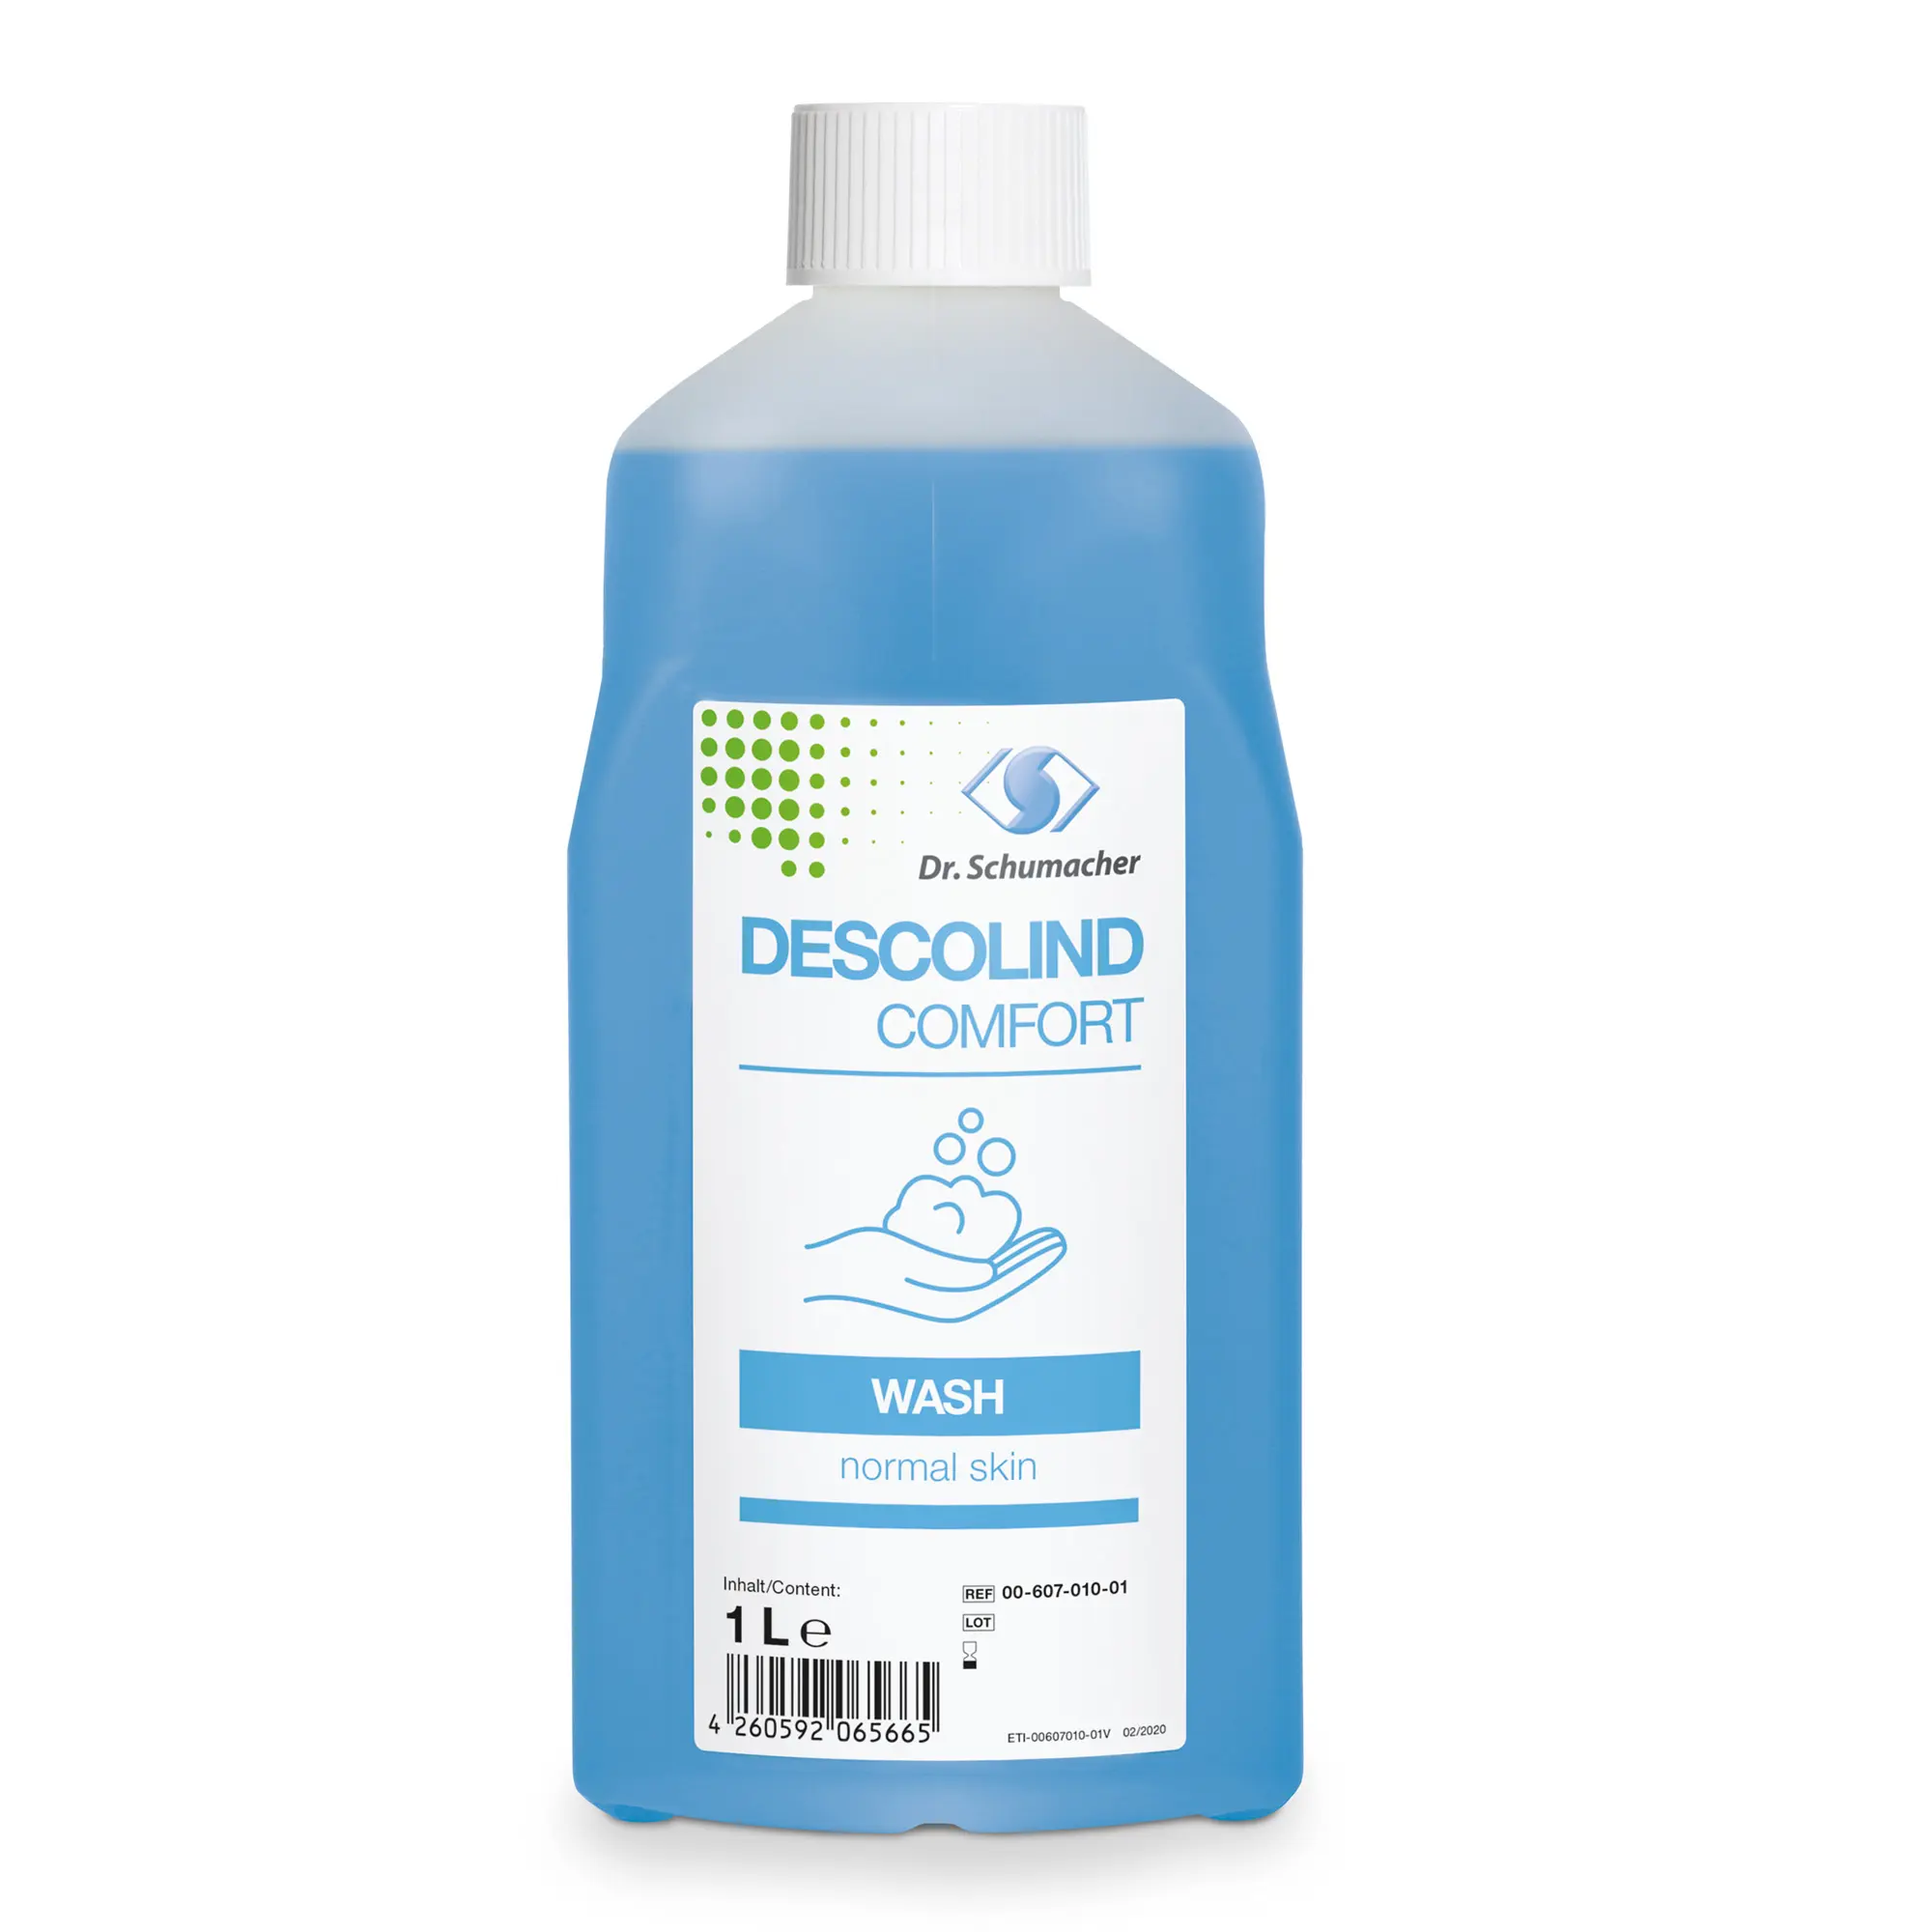 Dr. Schumacher Descolind Comfort Wash Waschlotion 1 Liter 00-607-010-01_1